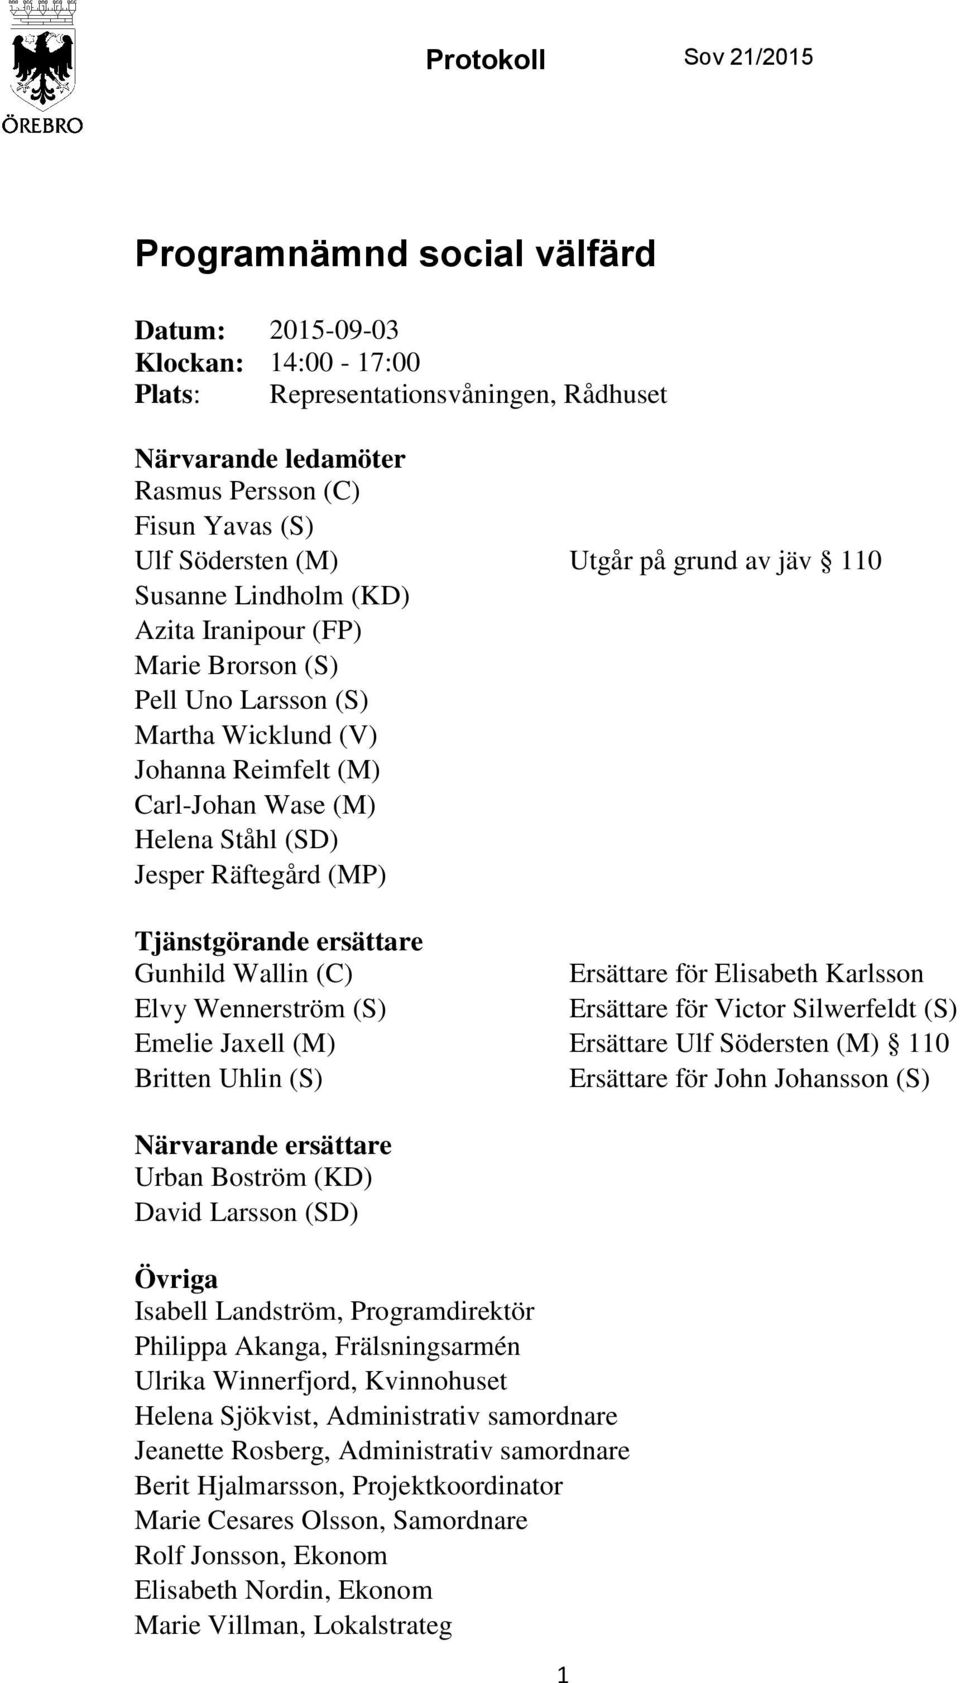 grund av jäv 110 Tjänstgörande ersättare Gunhild Wallin (C) Ersättare för Elisabeth Karlsson Elvy Wennerström (S) Zuaw Ersättare (S) för Victor Silwerfeldt (S) Emelie Jaxell (M) Ersättare Ulf